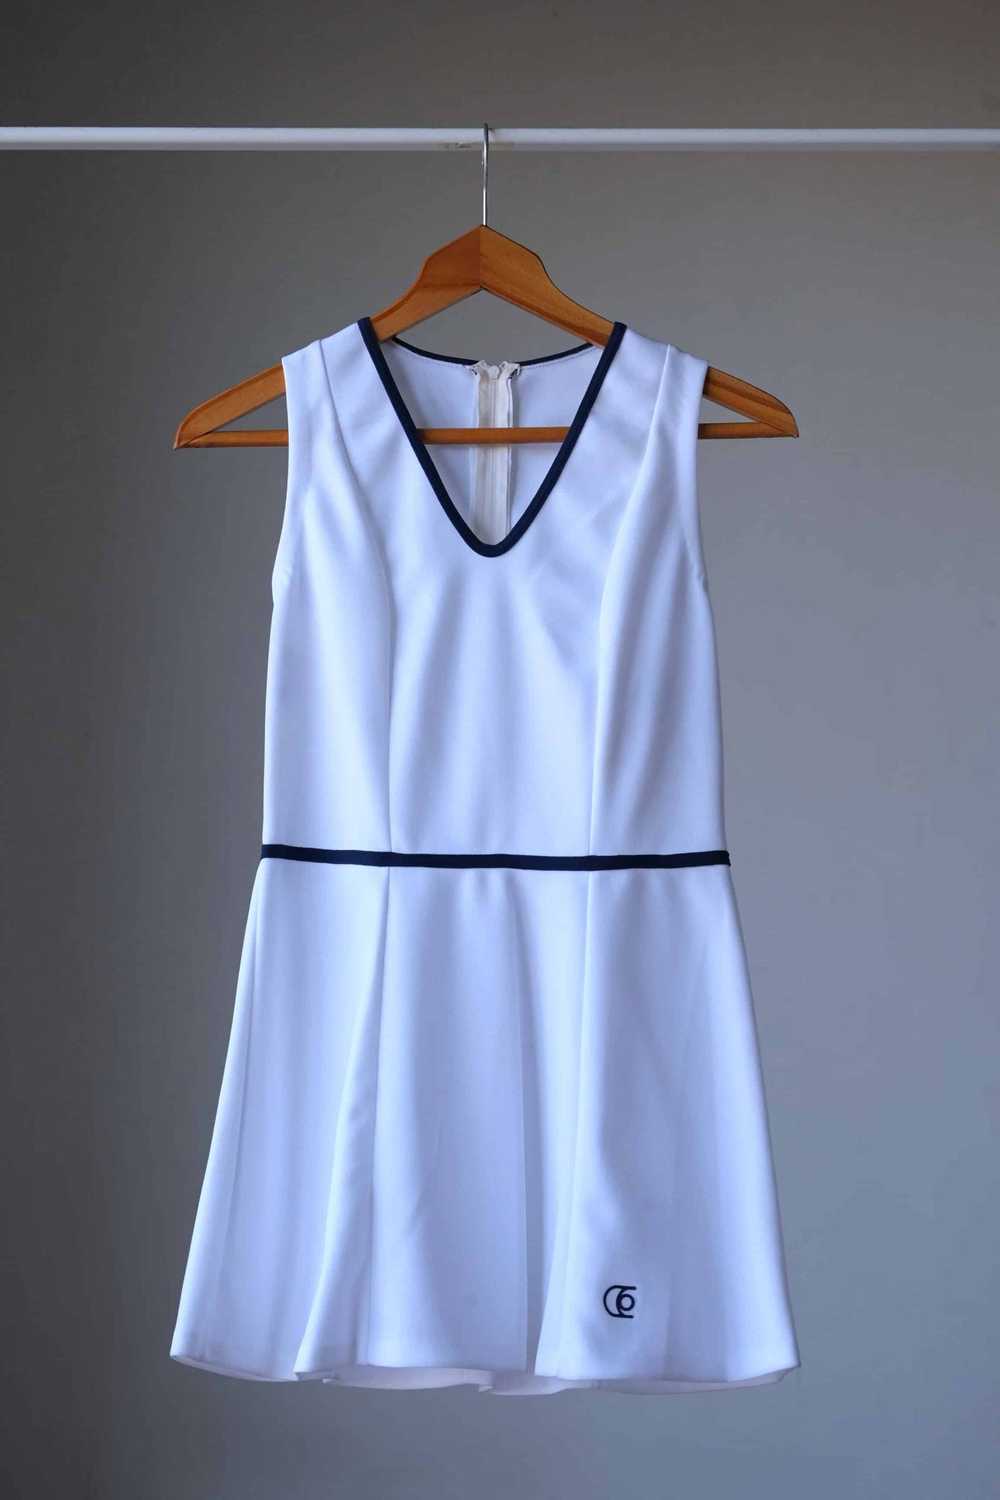 ELIETTE Reine 70's Tennis Dress - image 3